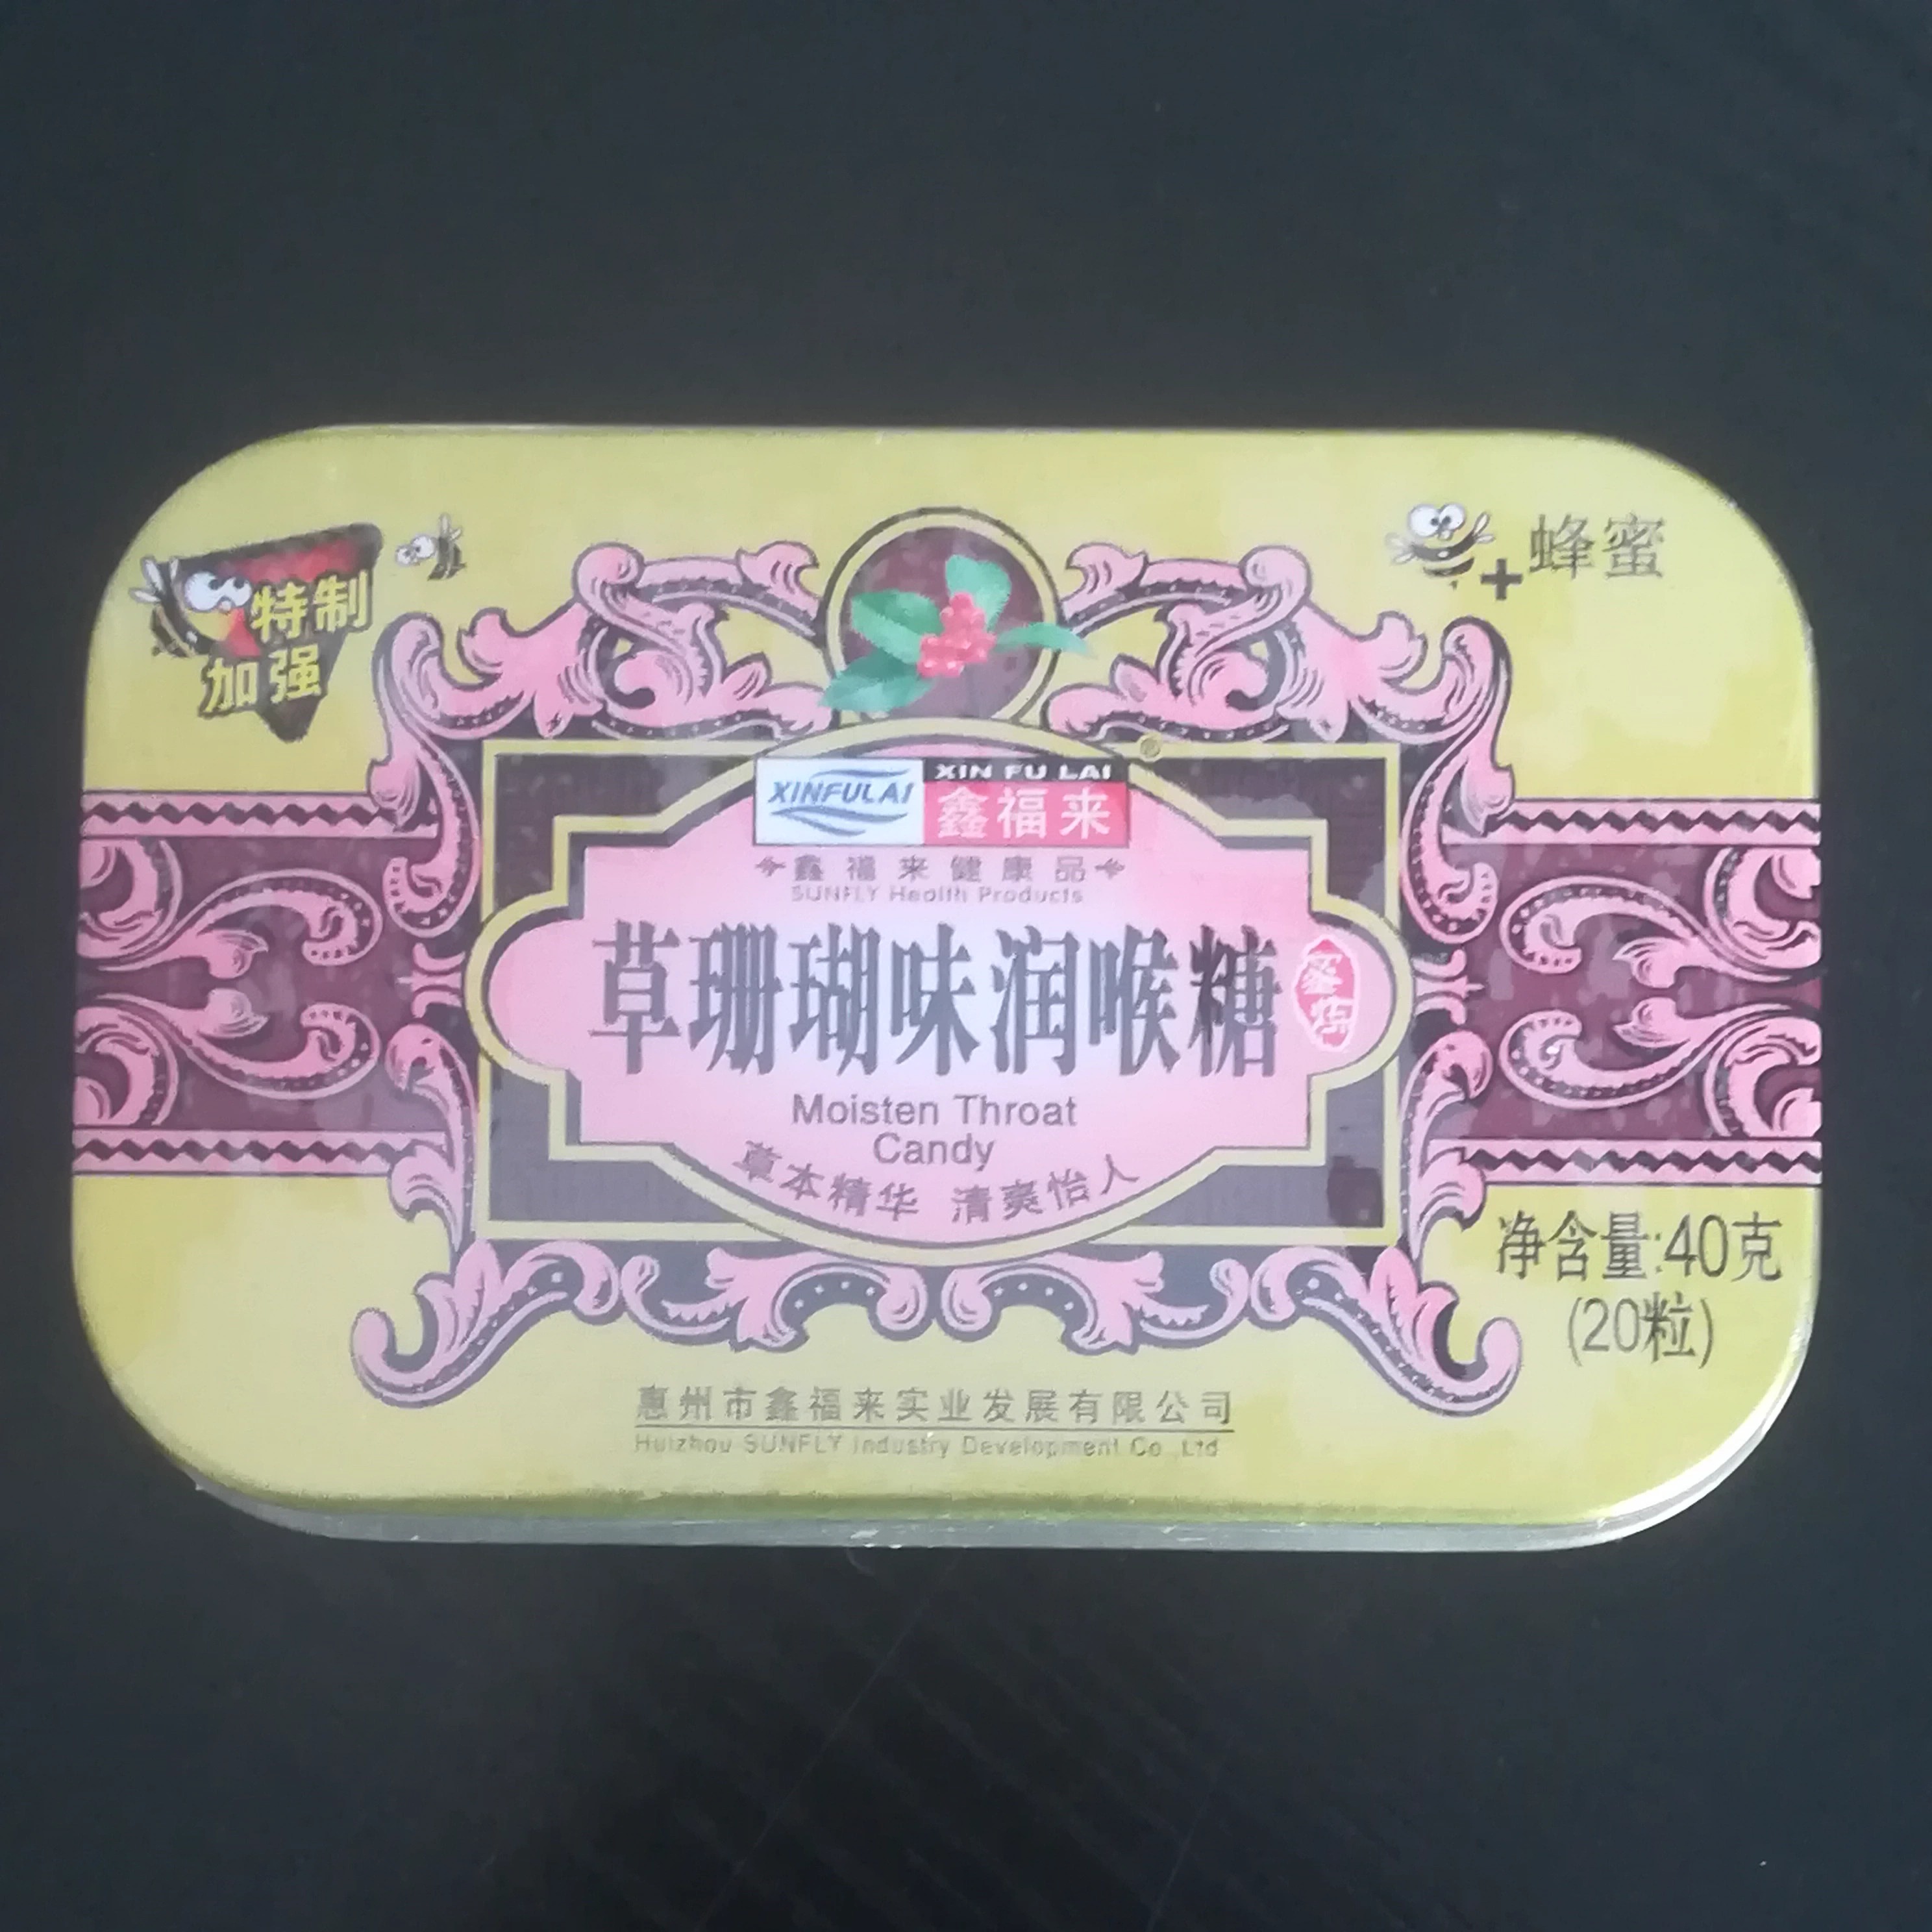 广东鑫福来铁盒草珊瑚味润喉糖含片护嗓子疼送教师硬质糖果16盒装